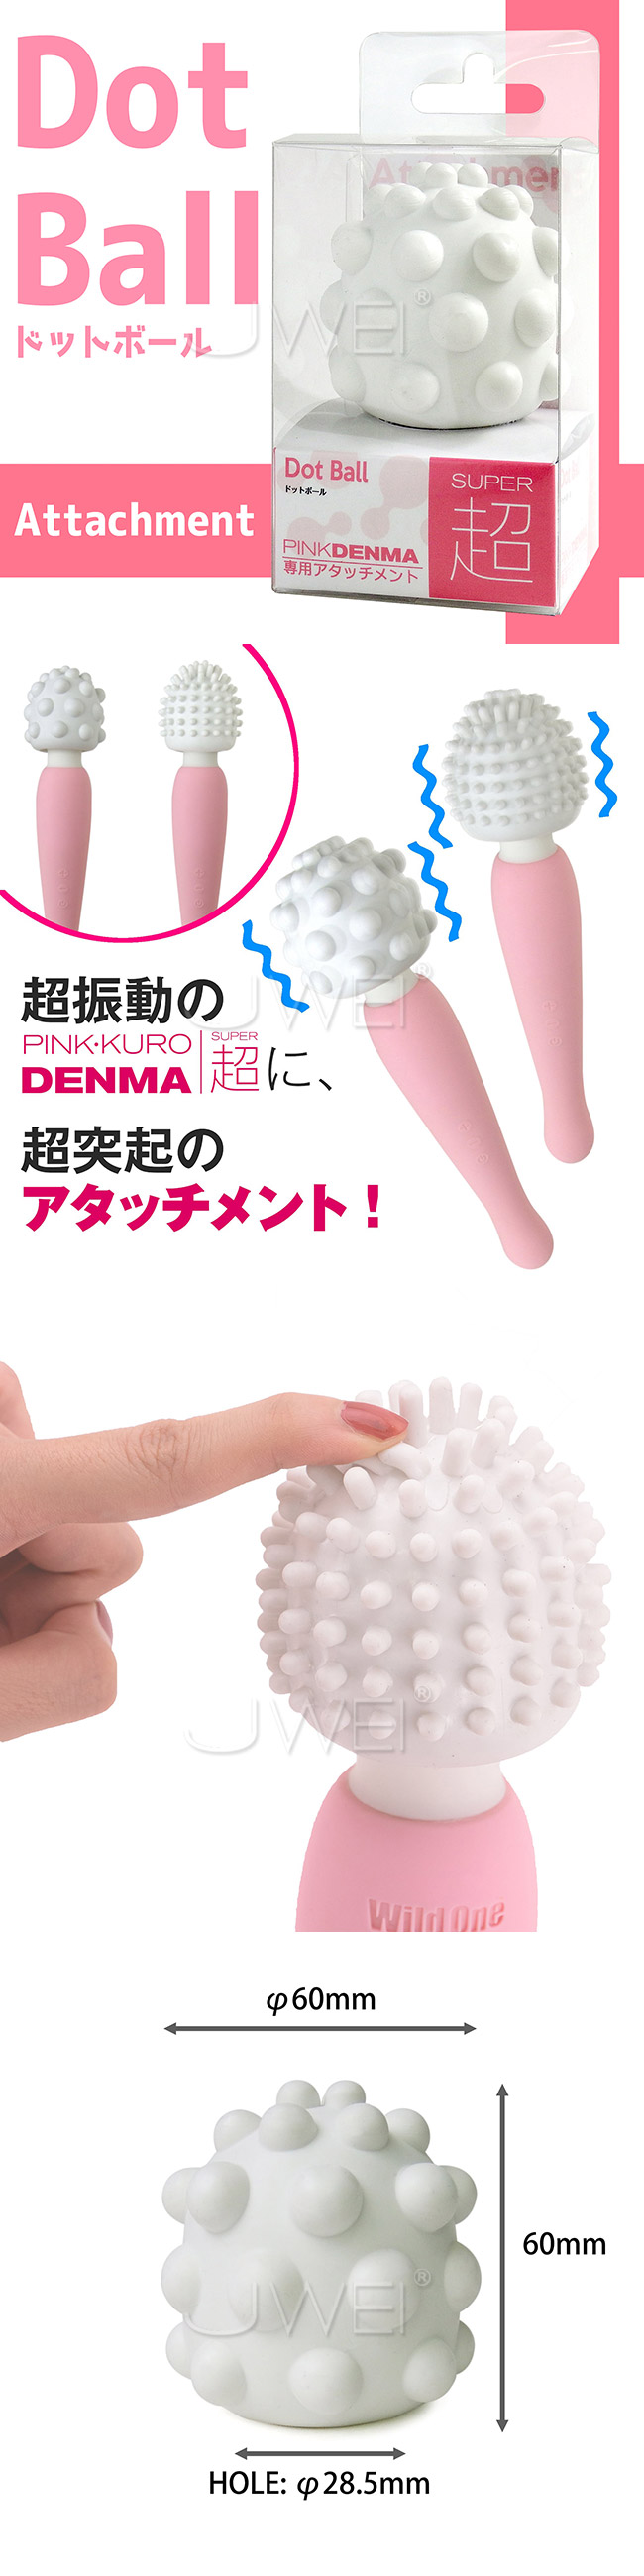 日本原裝進口SSI．PINK DENMA Super AV棒專用頭套密集圓點型(直徑45mm對應)-Dot Ball